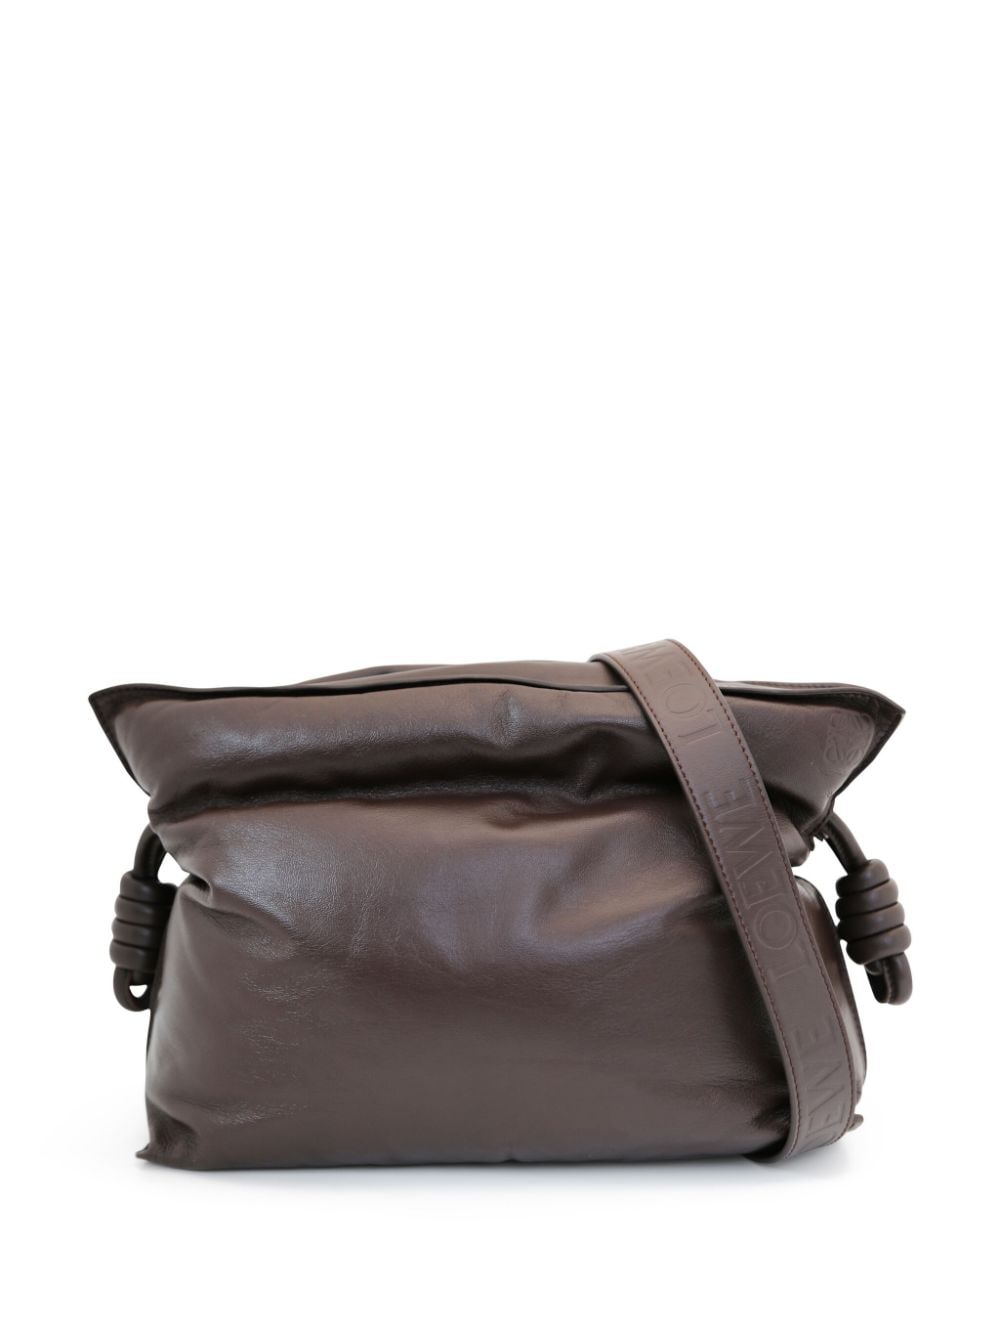 Loewe Pre-Owned Flamenco leather clutch bag - Brown von Loewe Pre-Owned